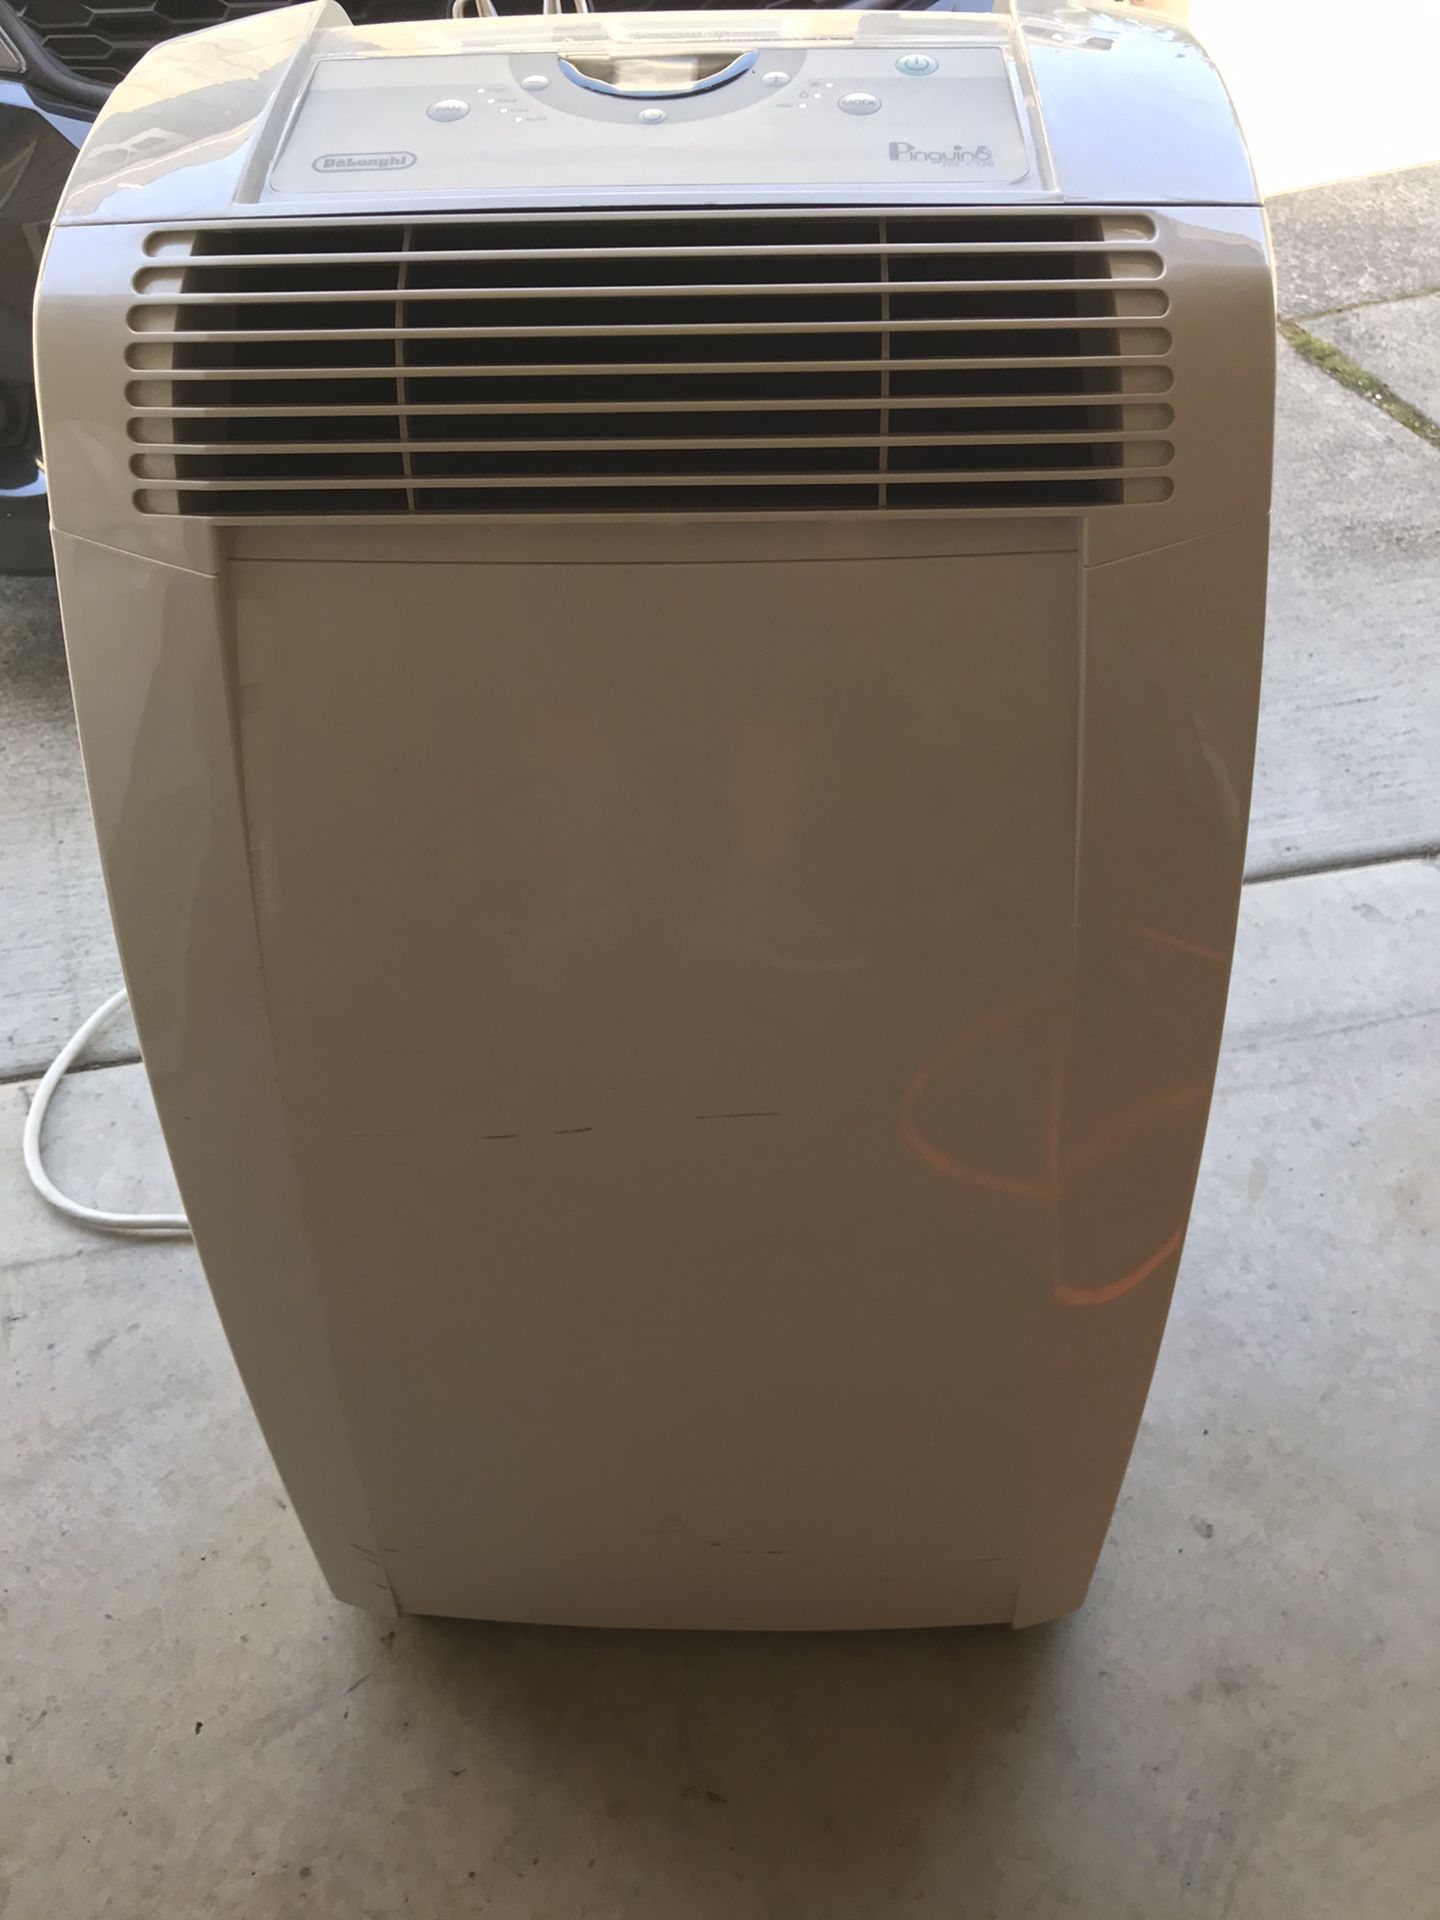 Portable Air Conditioner - 3 in 1 Delonghi 12,000 BTU